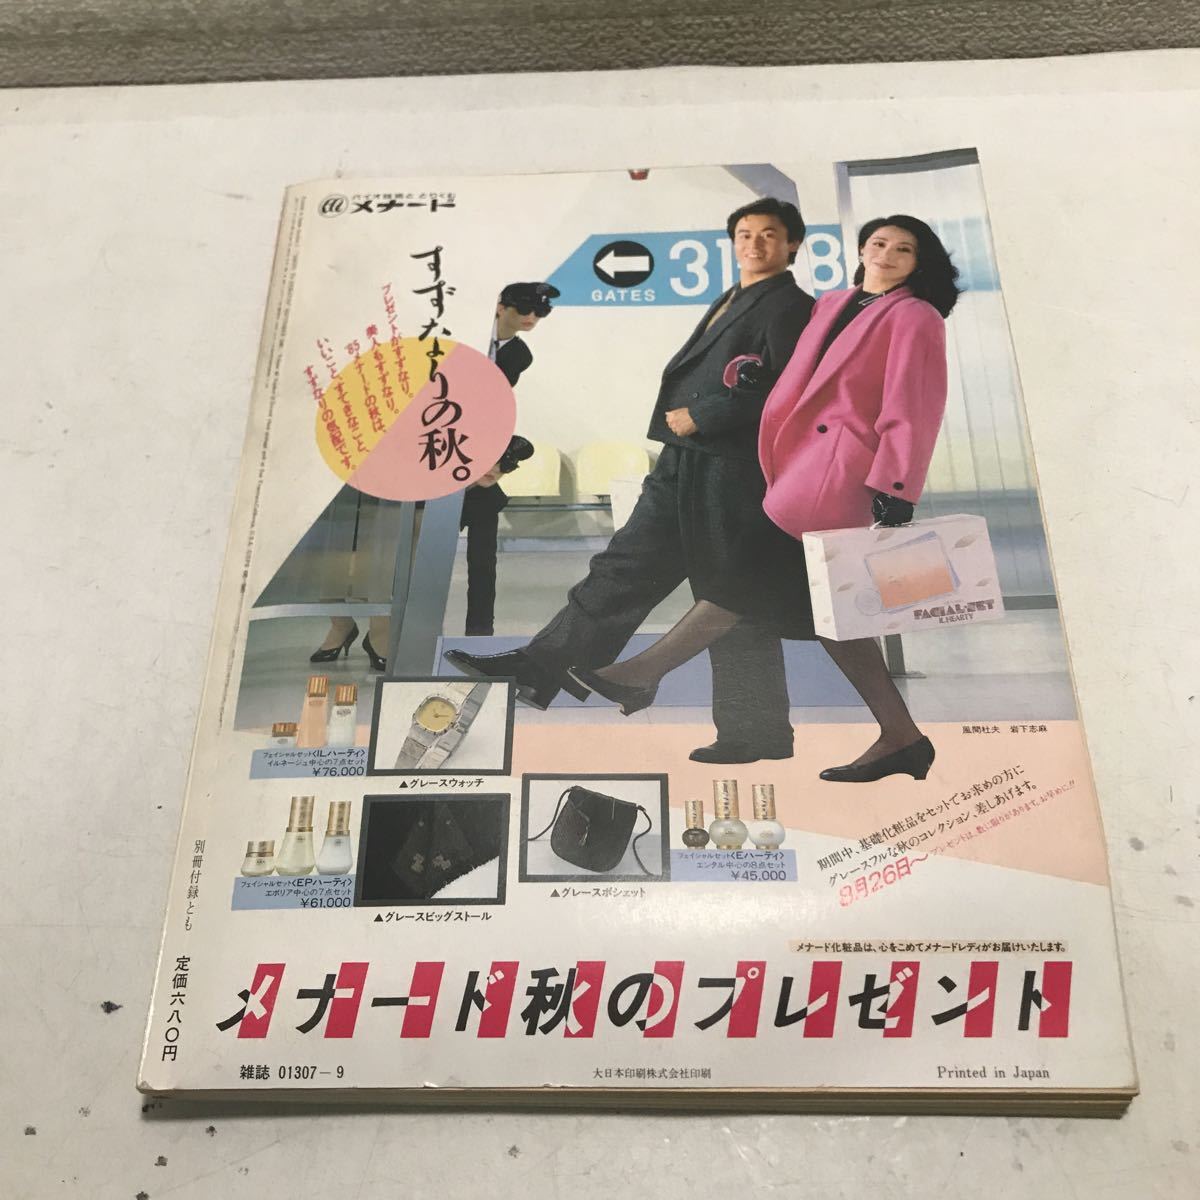 230113*L22*... жизнь 1985 год 9 месяц выпуск обложка / Saito Keiko специальный выпуск / учитель ...,........ жизнь фирма дополнение нет 